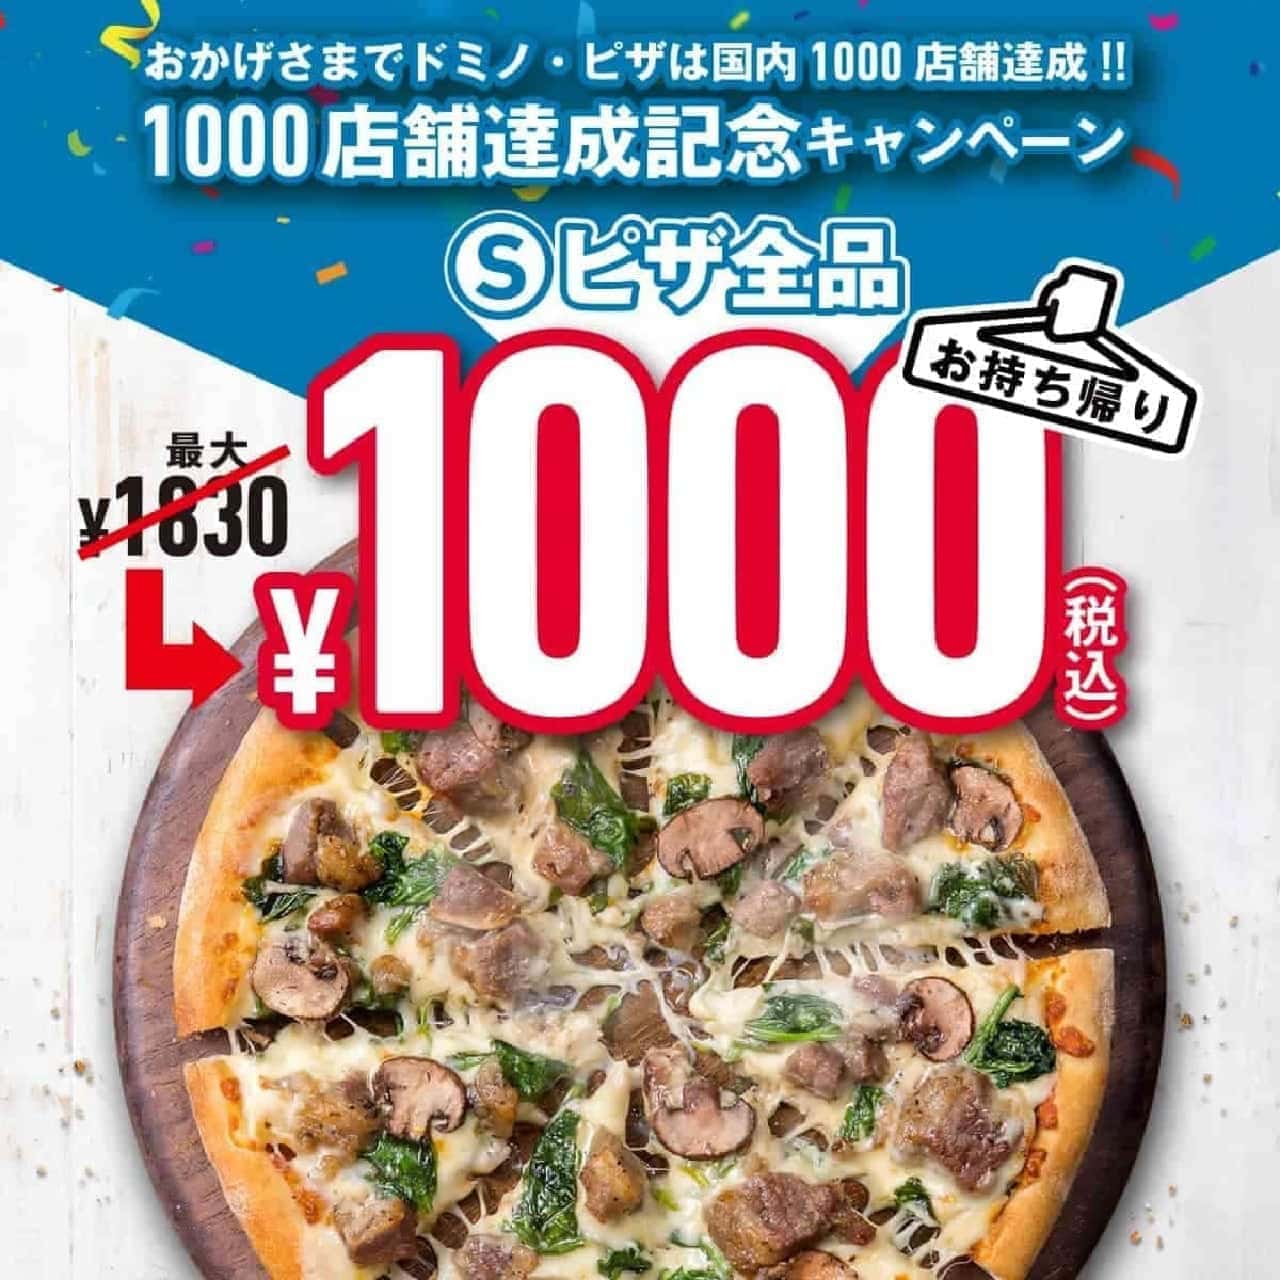 ドミノ・ピザ「1000店舗達成記念キャンペーン」